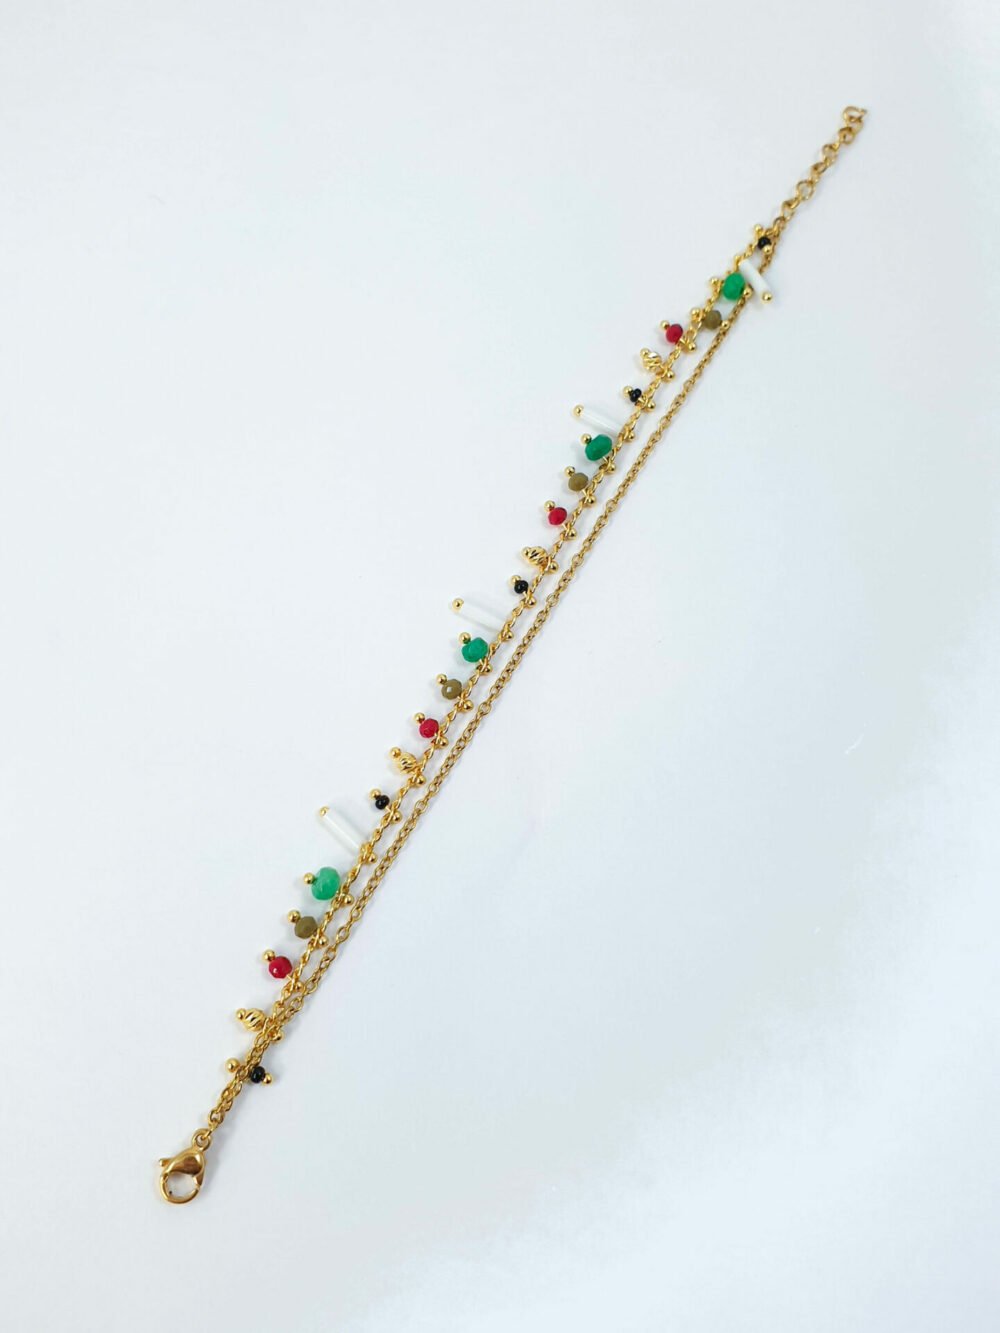 bijoux femme barcelone acier inoxydable laiton plaqué or doré fait main bracelet double chaine perle émaille coloré multicouleur vert blanc rouge